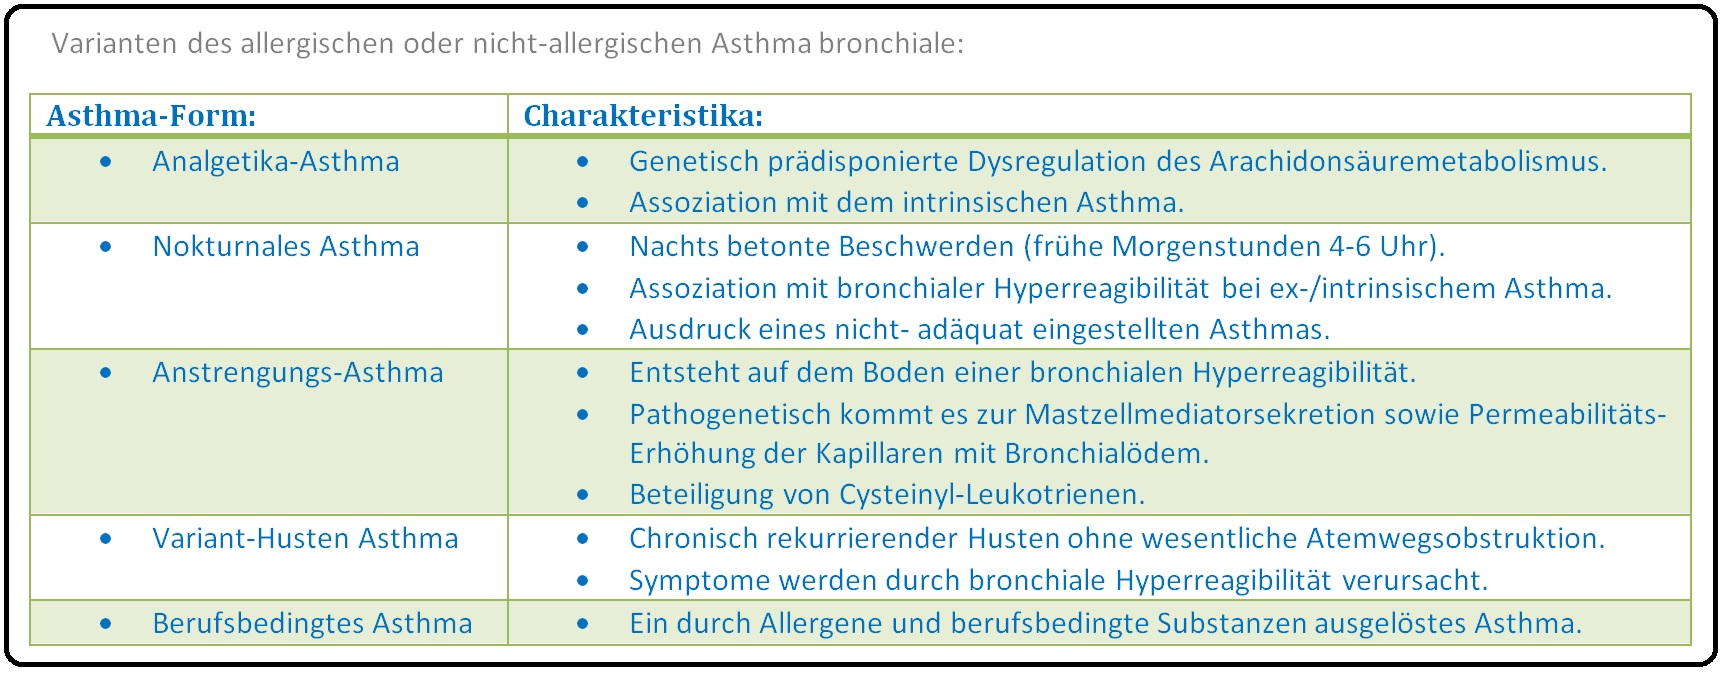 1017 Varianten des allergischen oder nicht allergischen Asthma bronchiale